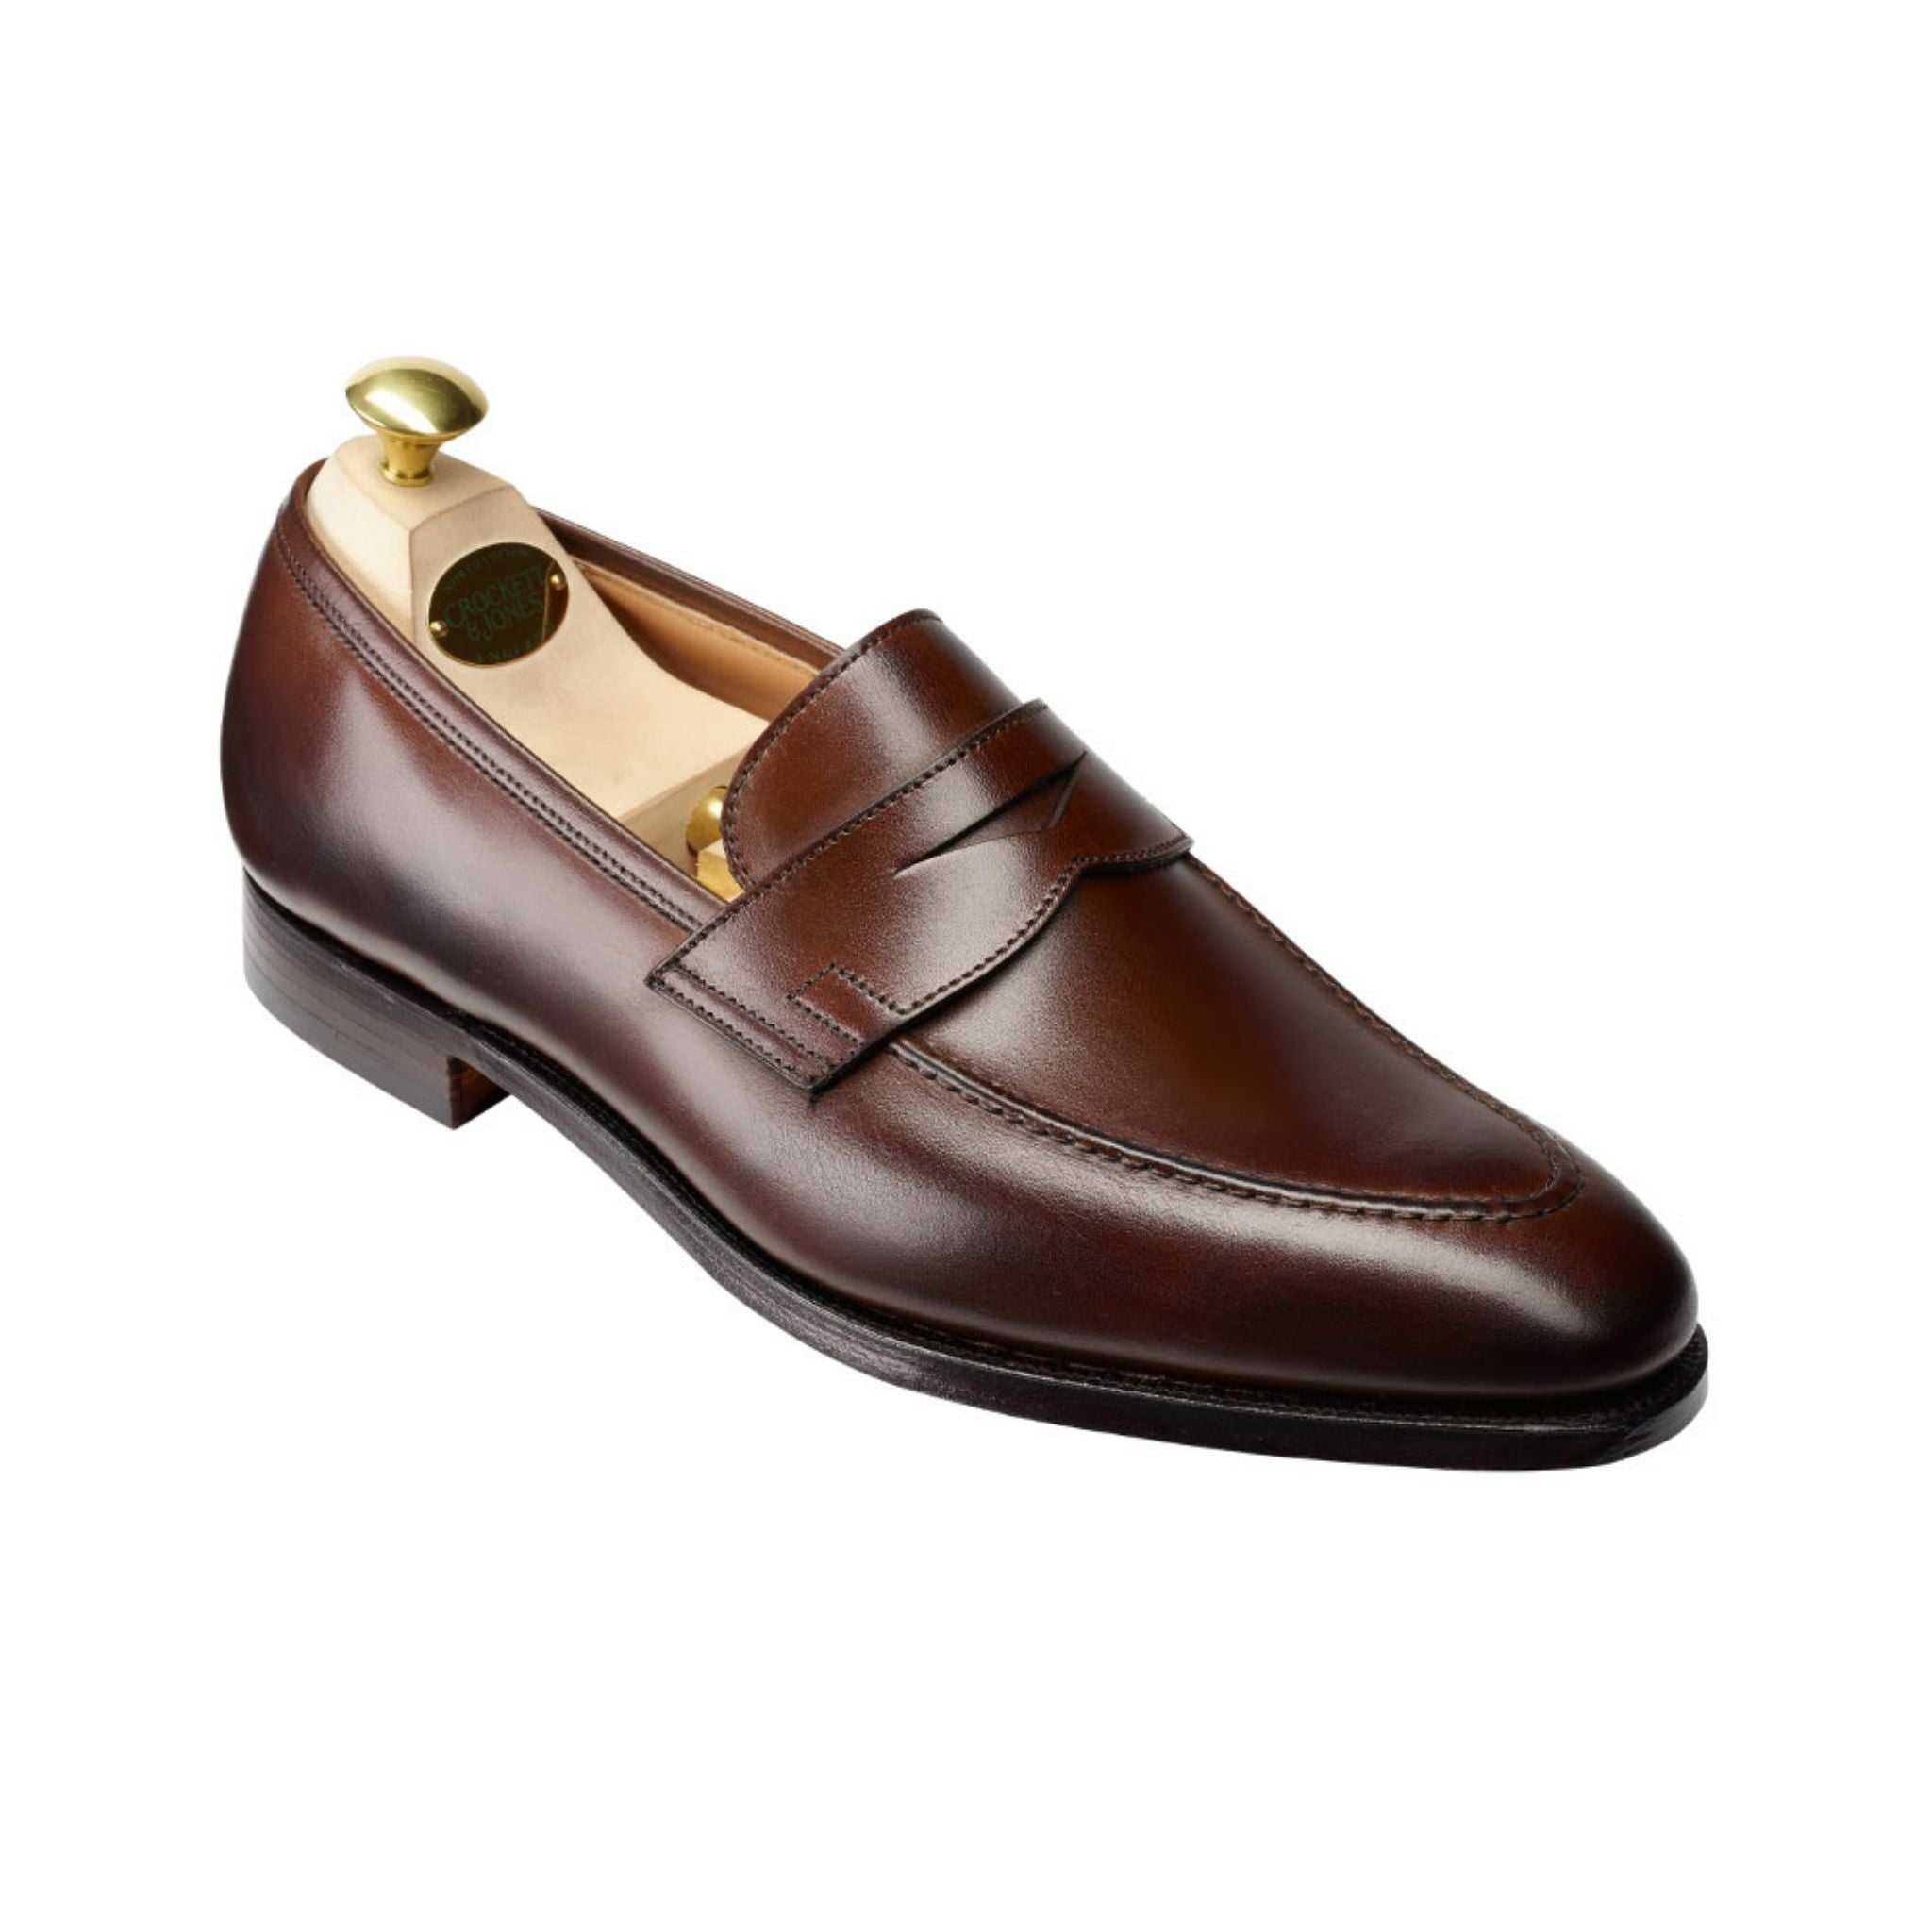 Best penny loafers for men - DLA guide - DressLikeA.com – Dress Like A